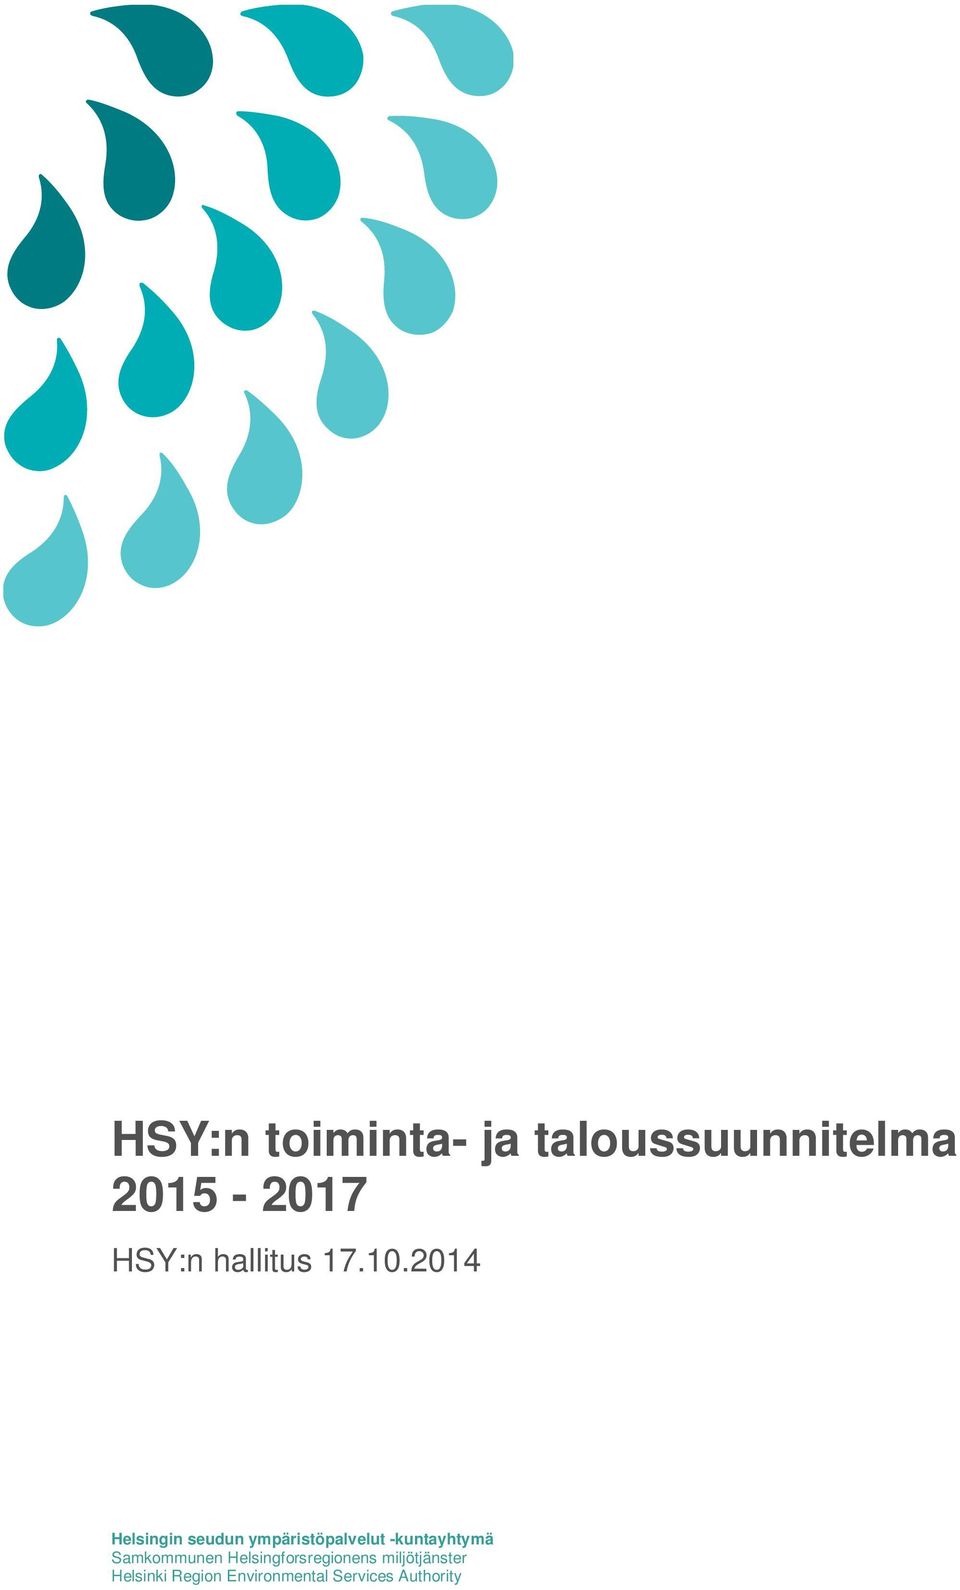 2014 Helsingin seudun ympäristöpalvelut -kuntayhtymä